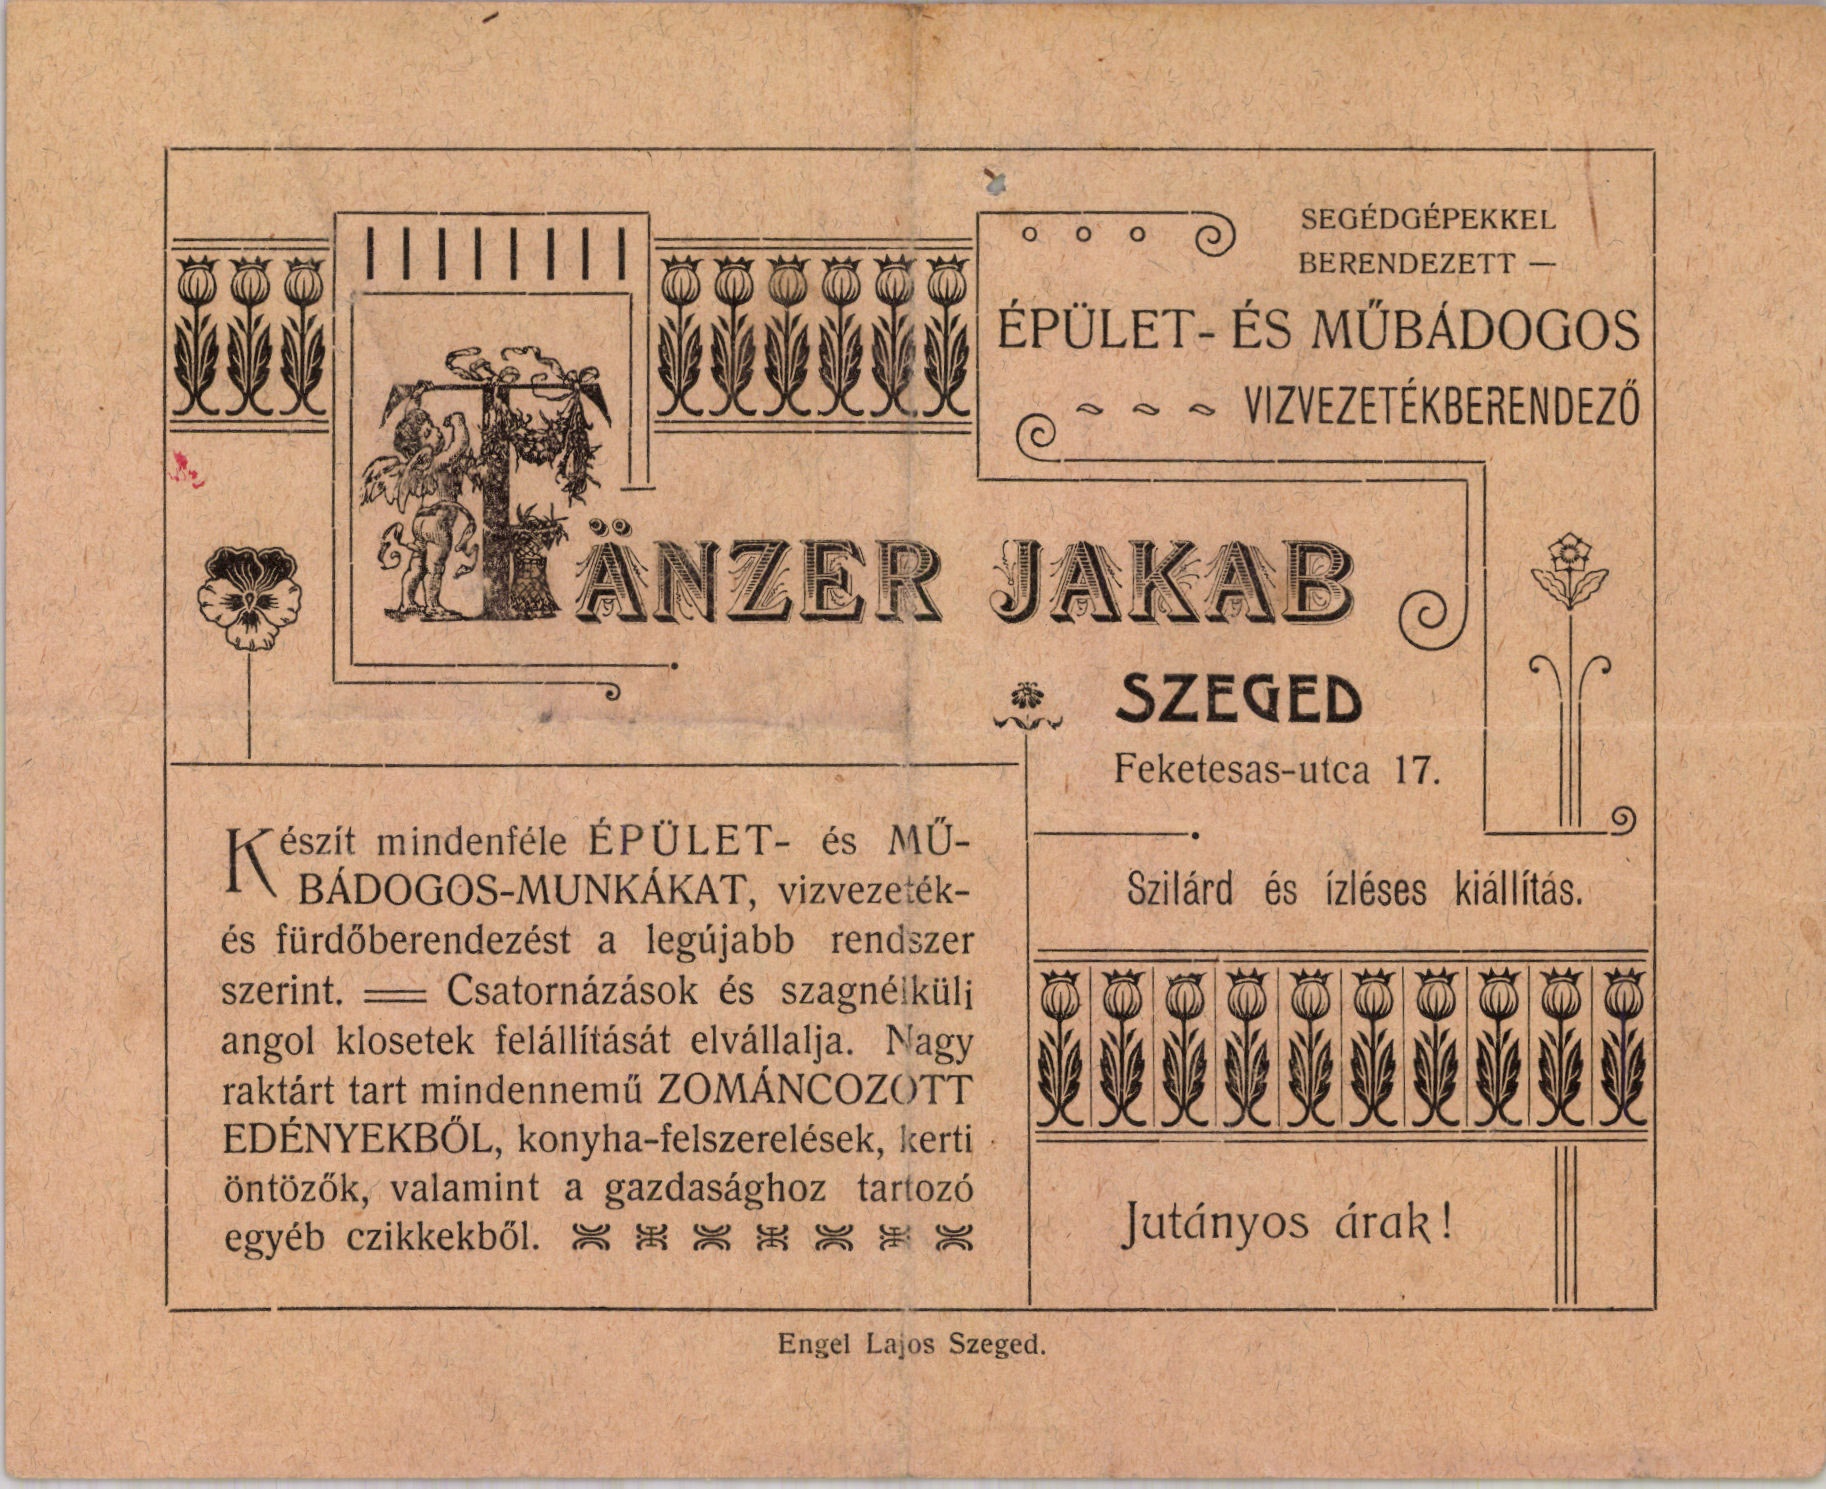 Tänzer Jakab épület- és műbádogos, vizvezetékberendező (Magyar Kereskedelmi és Vendéglátóipari Múzeum CC BY-NC-SA)